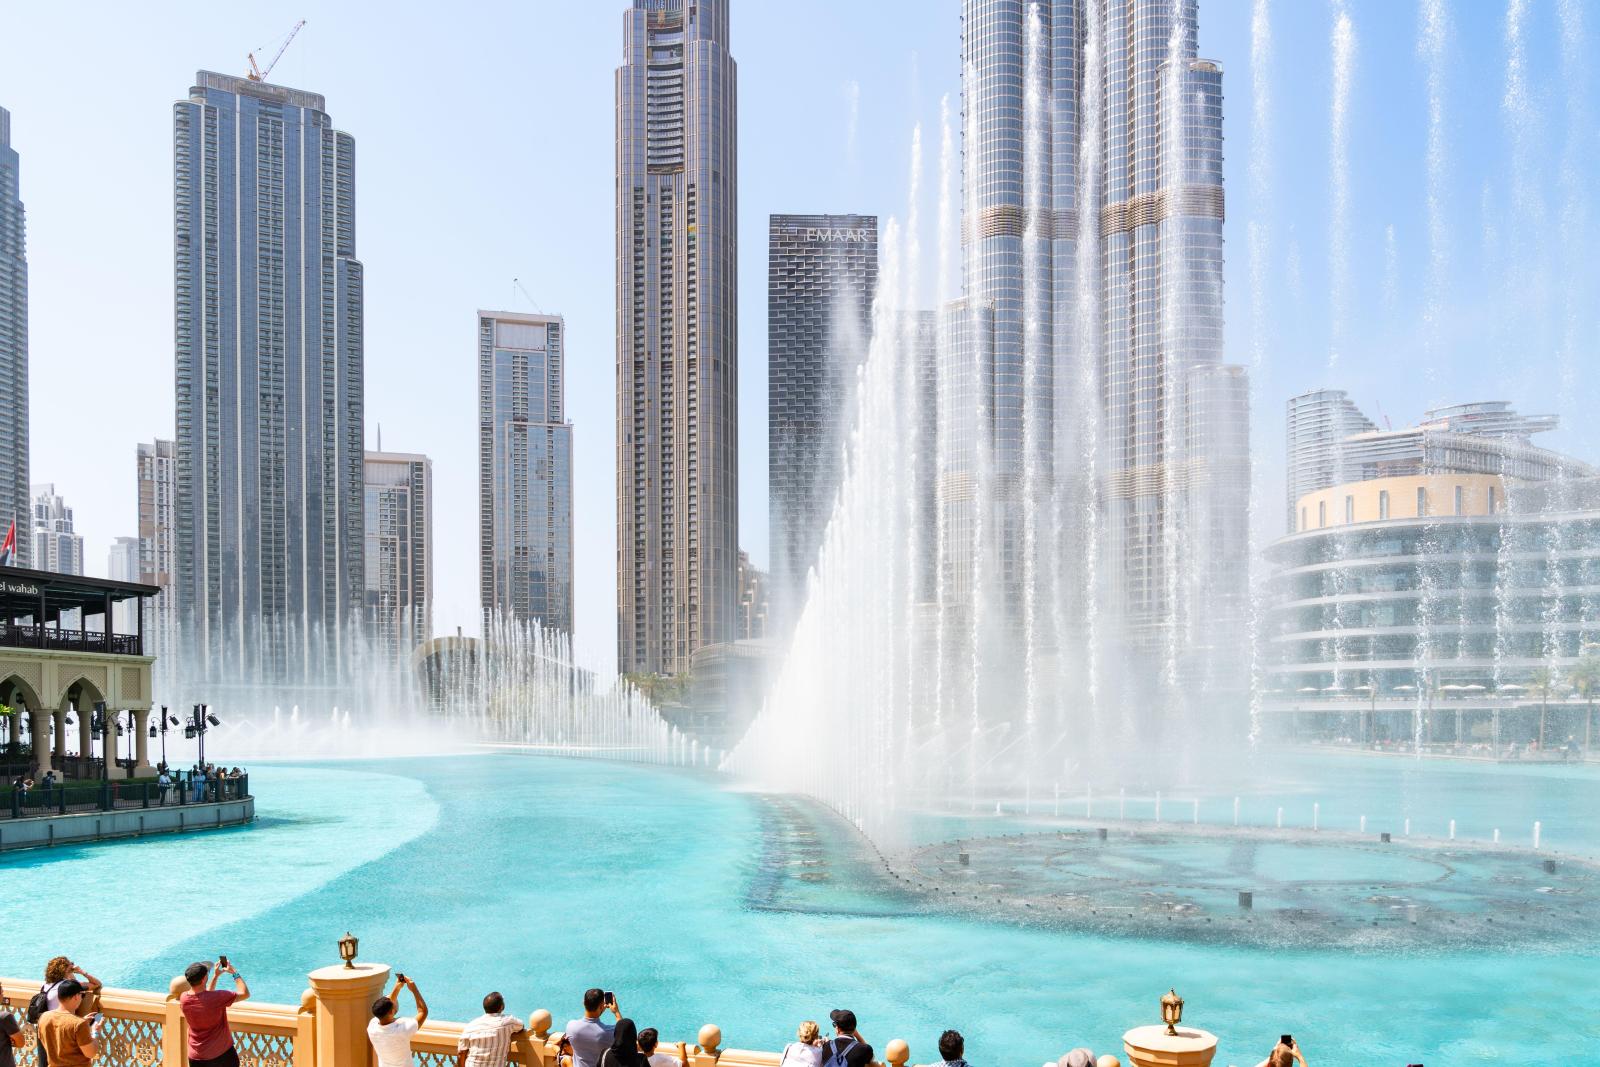 Высокие цены и совсем нет зелени: на что жалуются русские туристы в Дубае - image 2